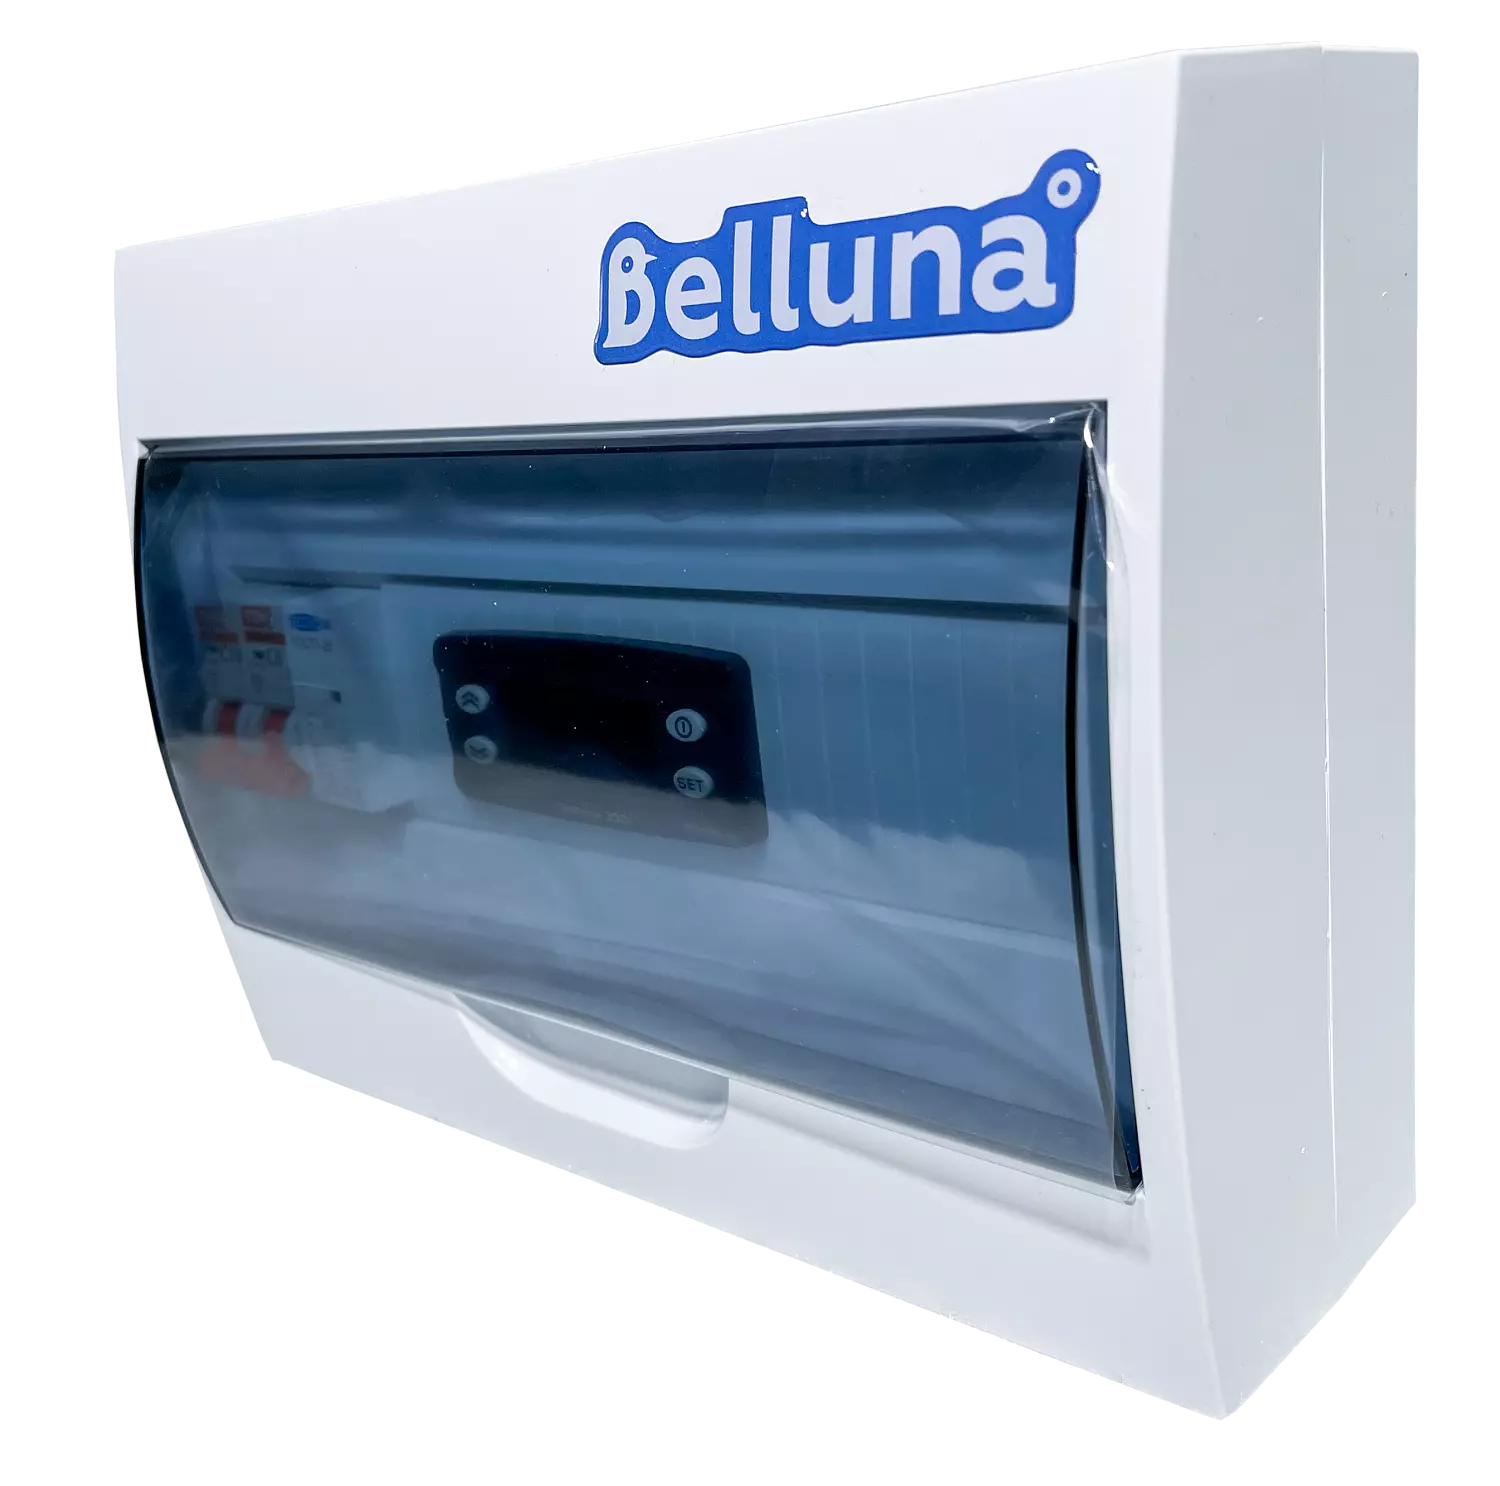 сплит-система Belluna U102-1 Санкт-Петербург